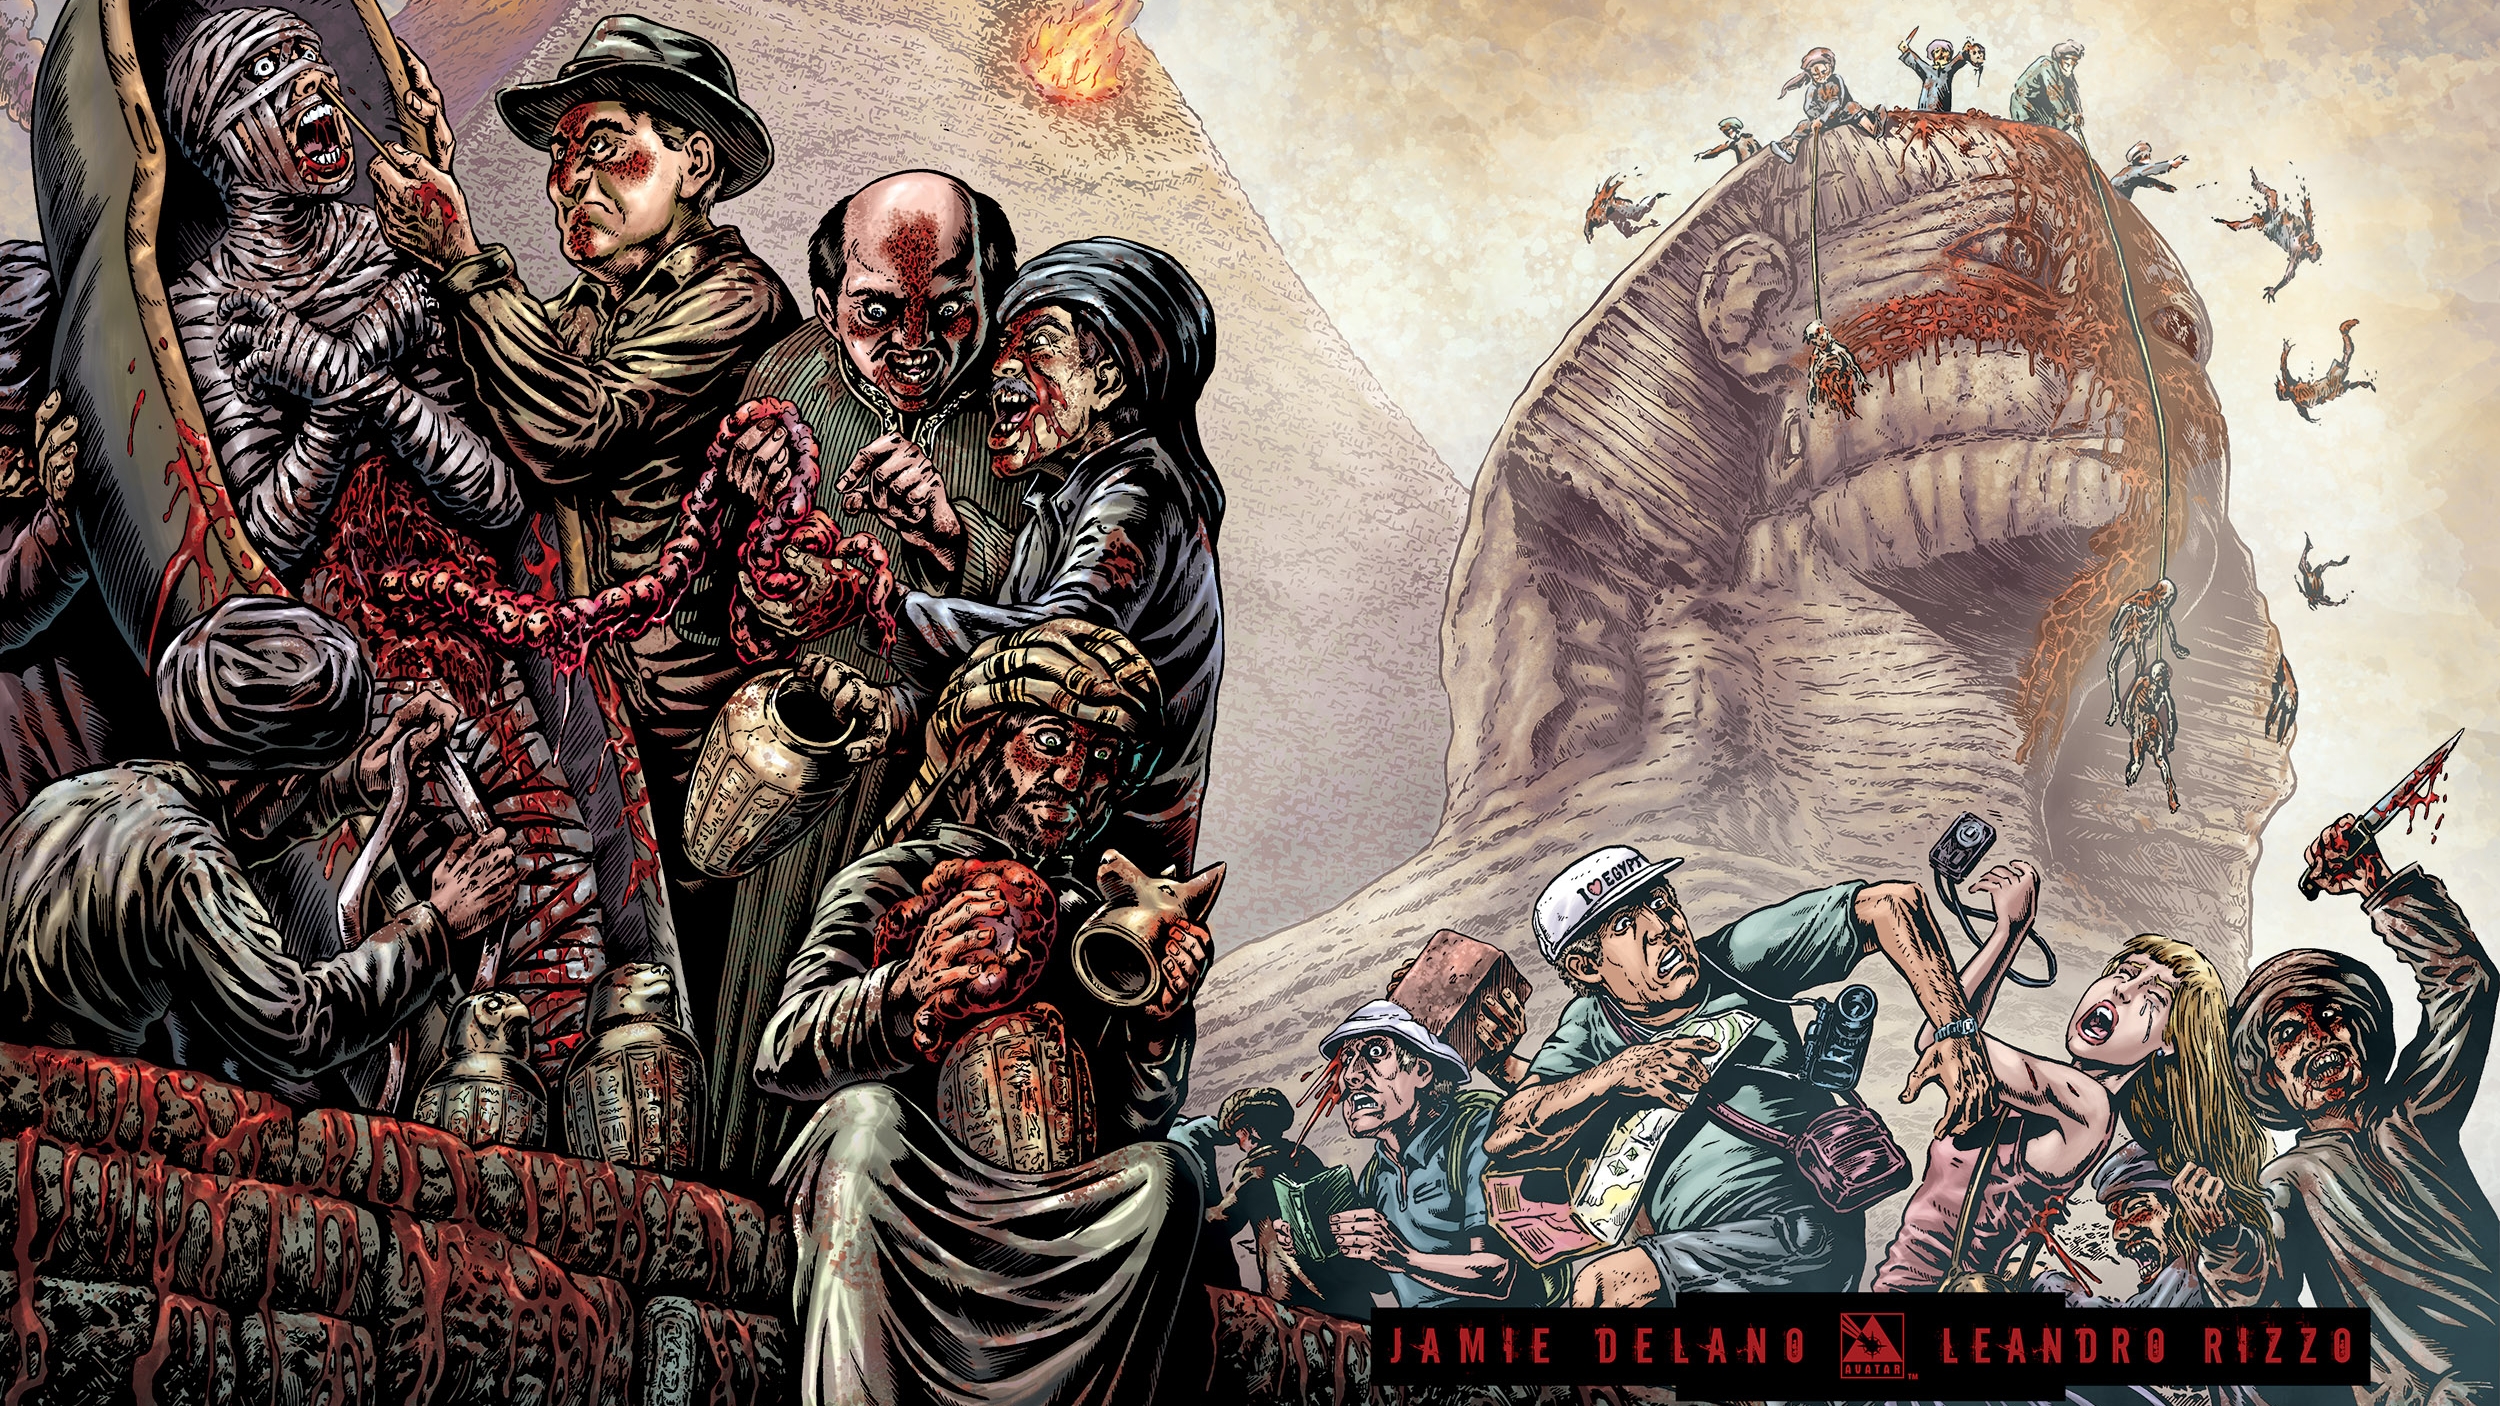 Download mobile wallpaper Comics, Crossed (Comics), Crossed: Badlands for free.